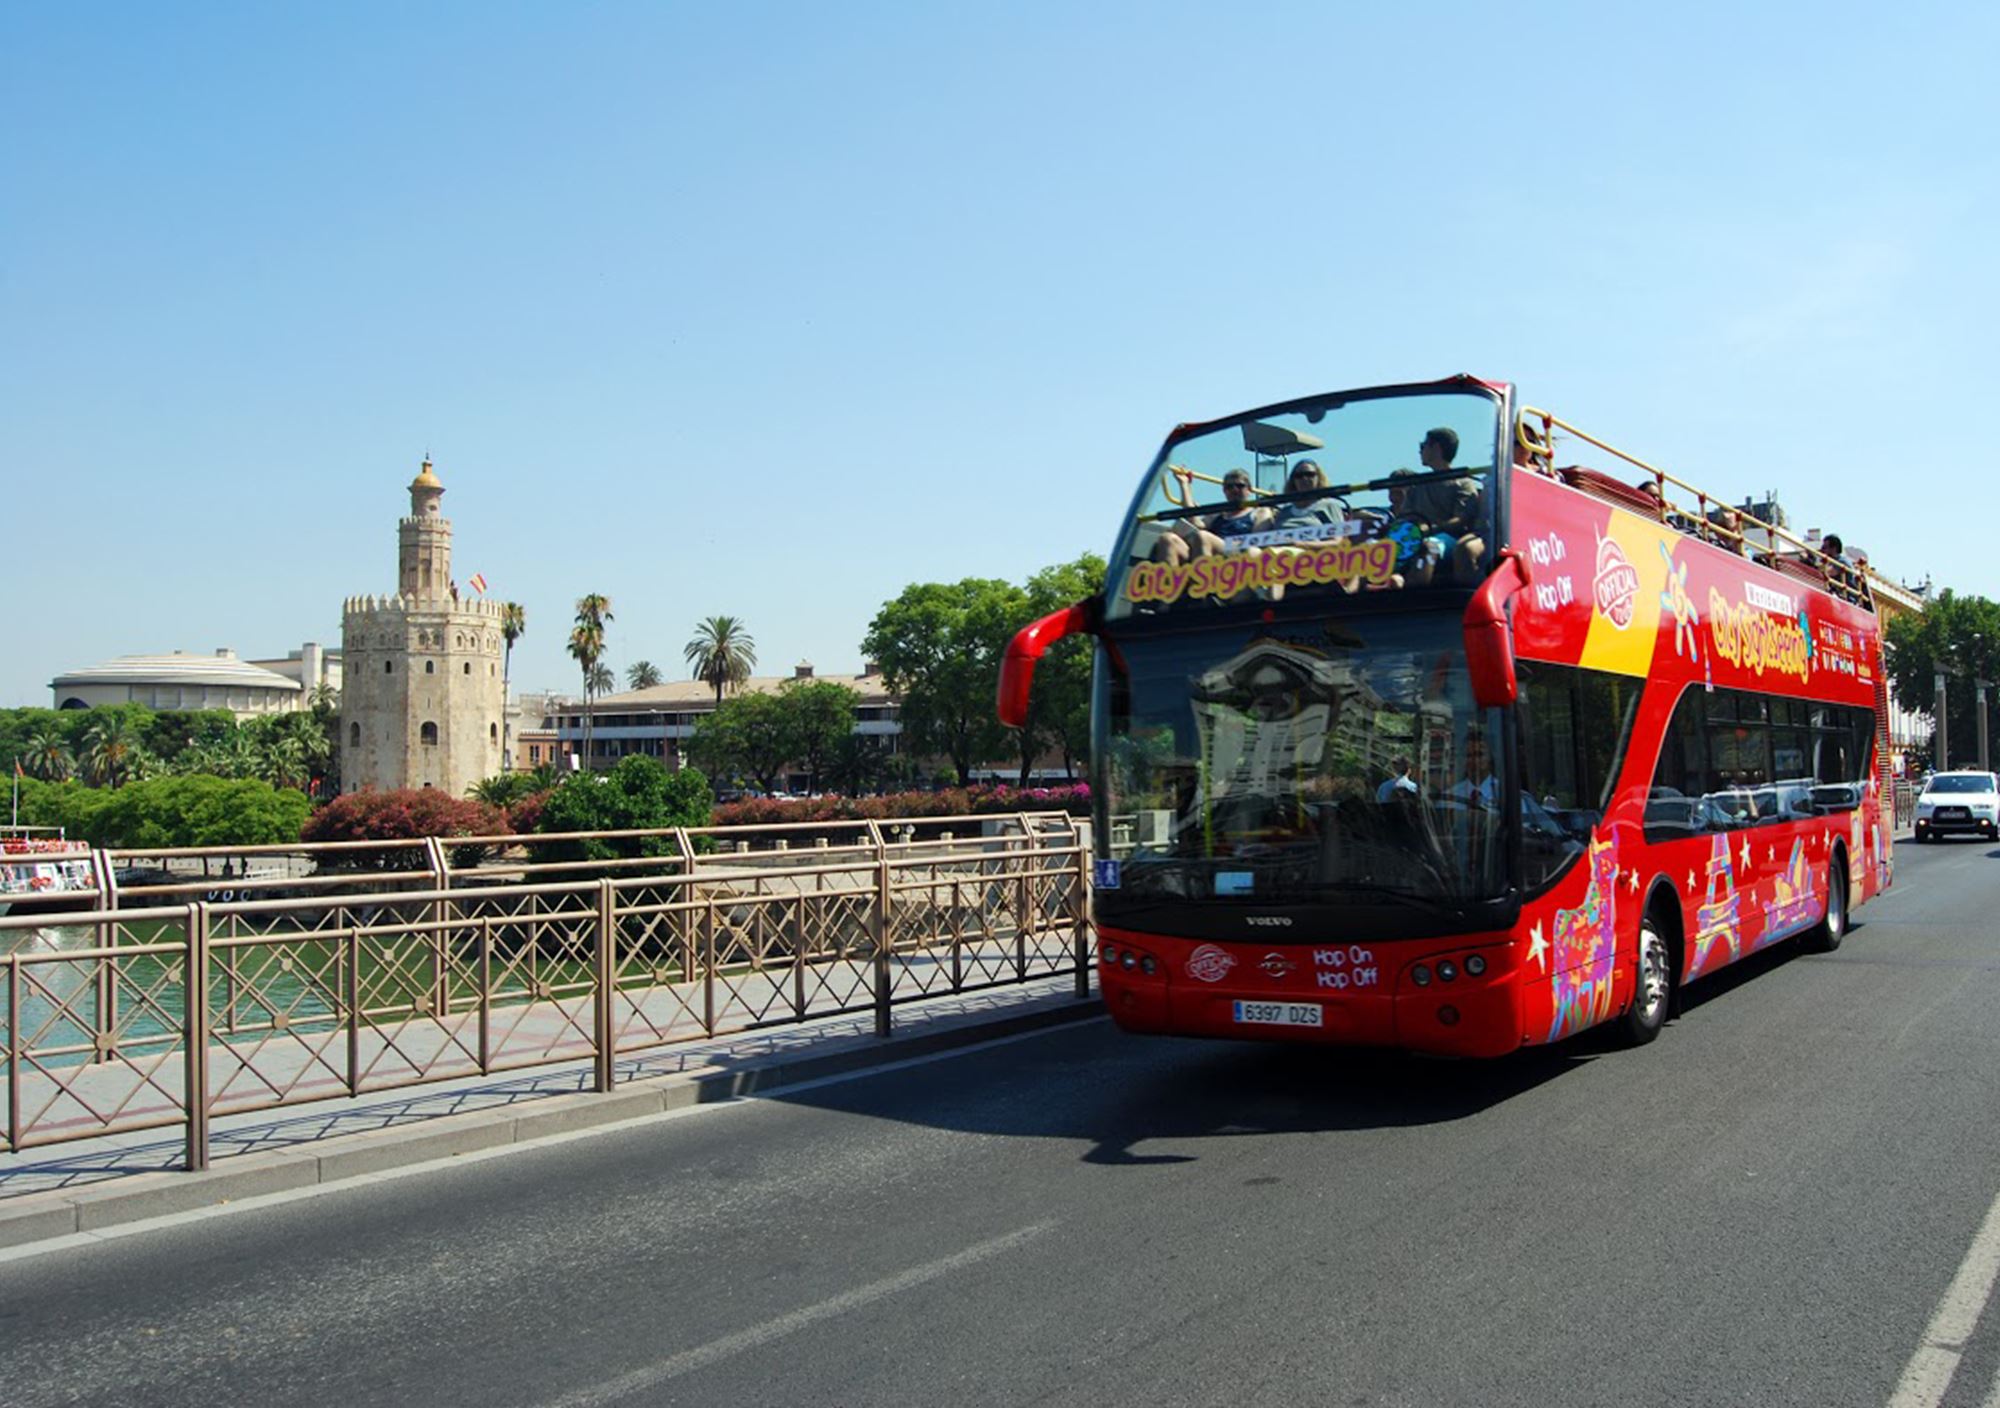 reservar online Bus Turístico City Sightseeing Sevilla